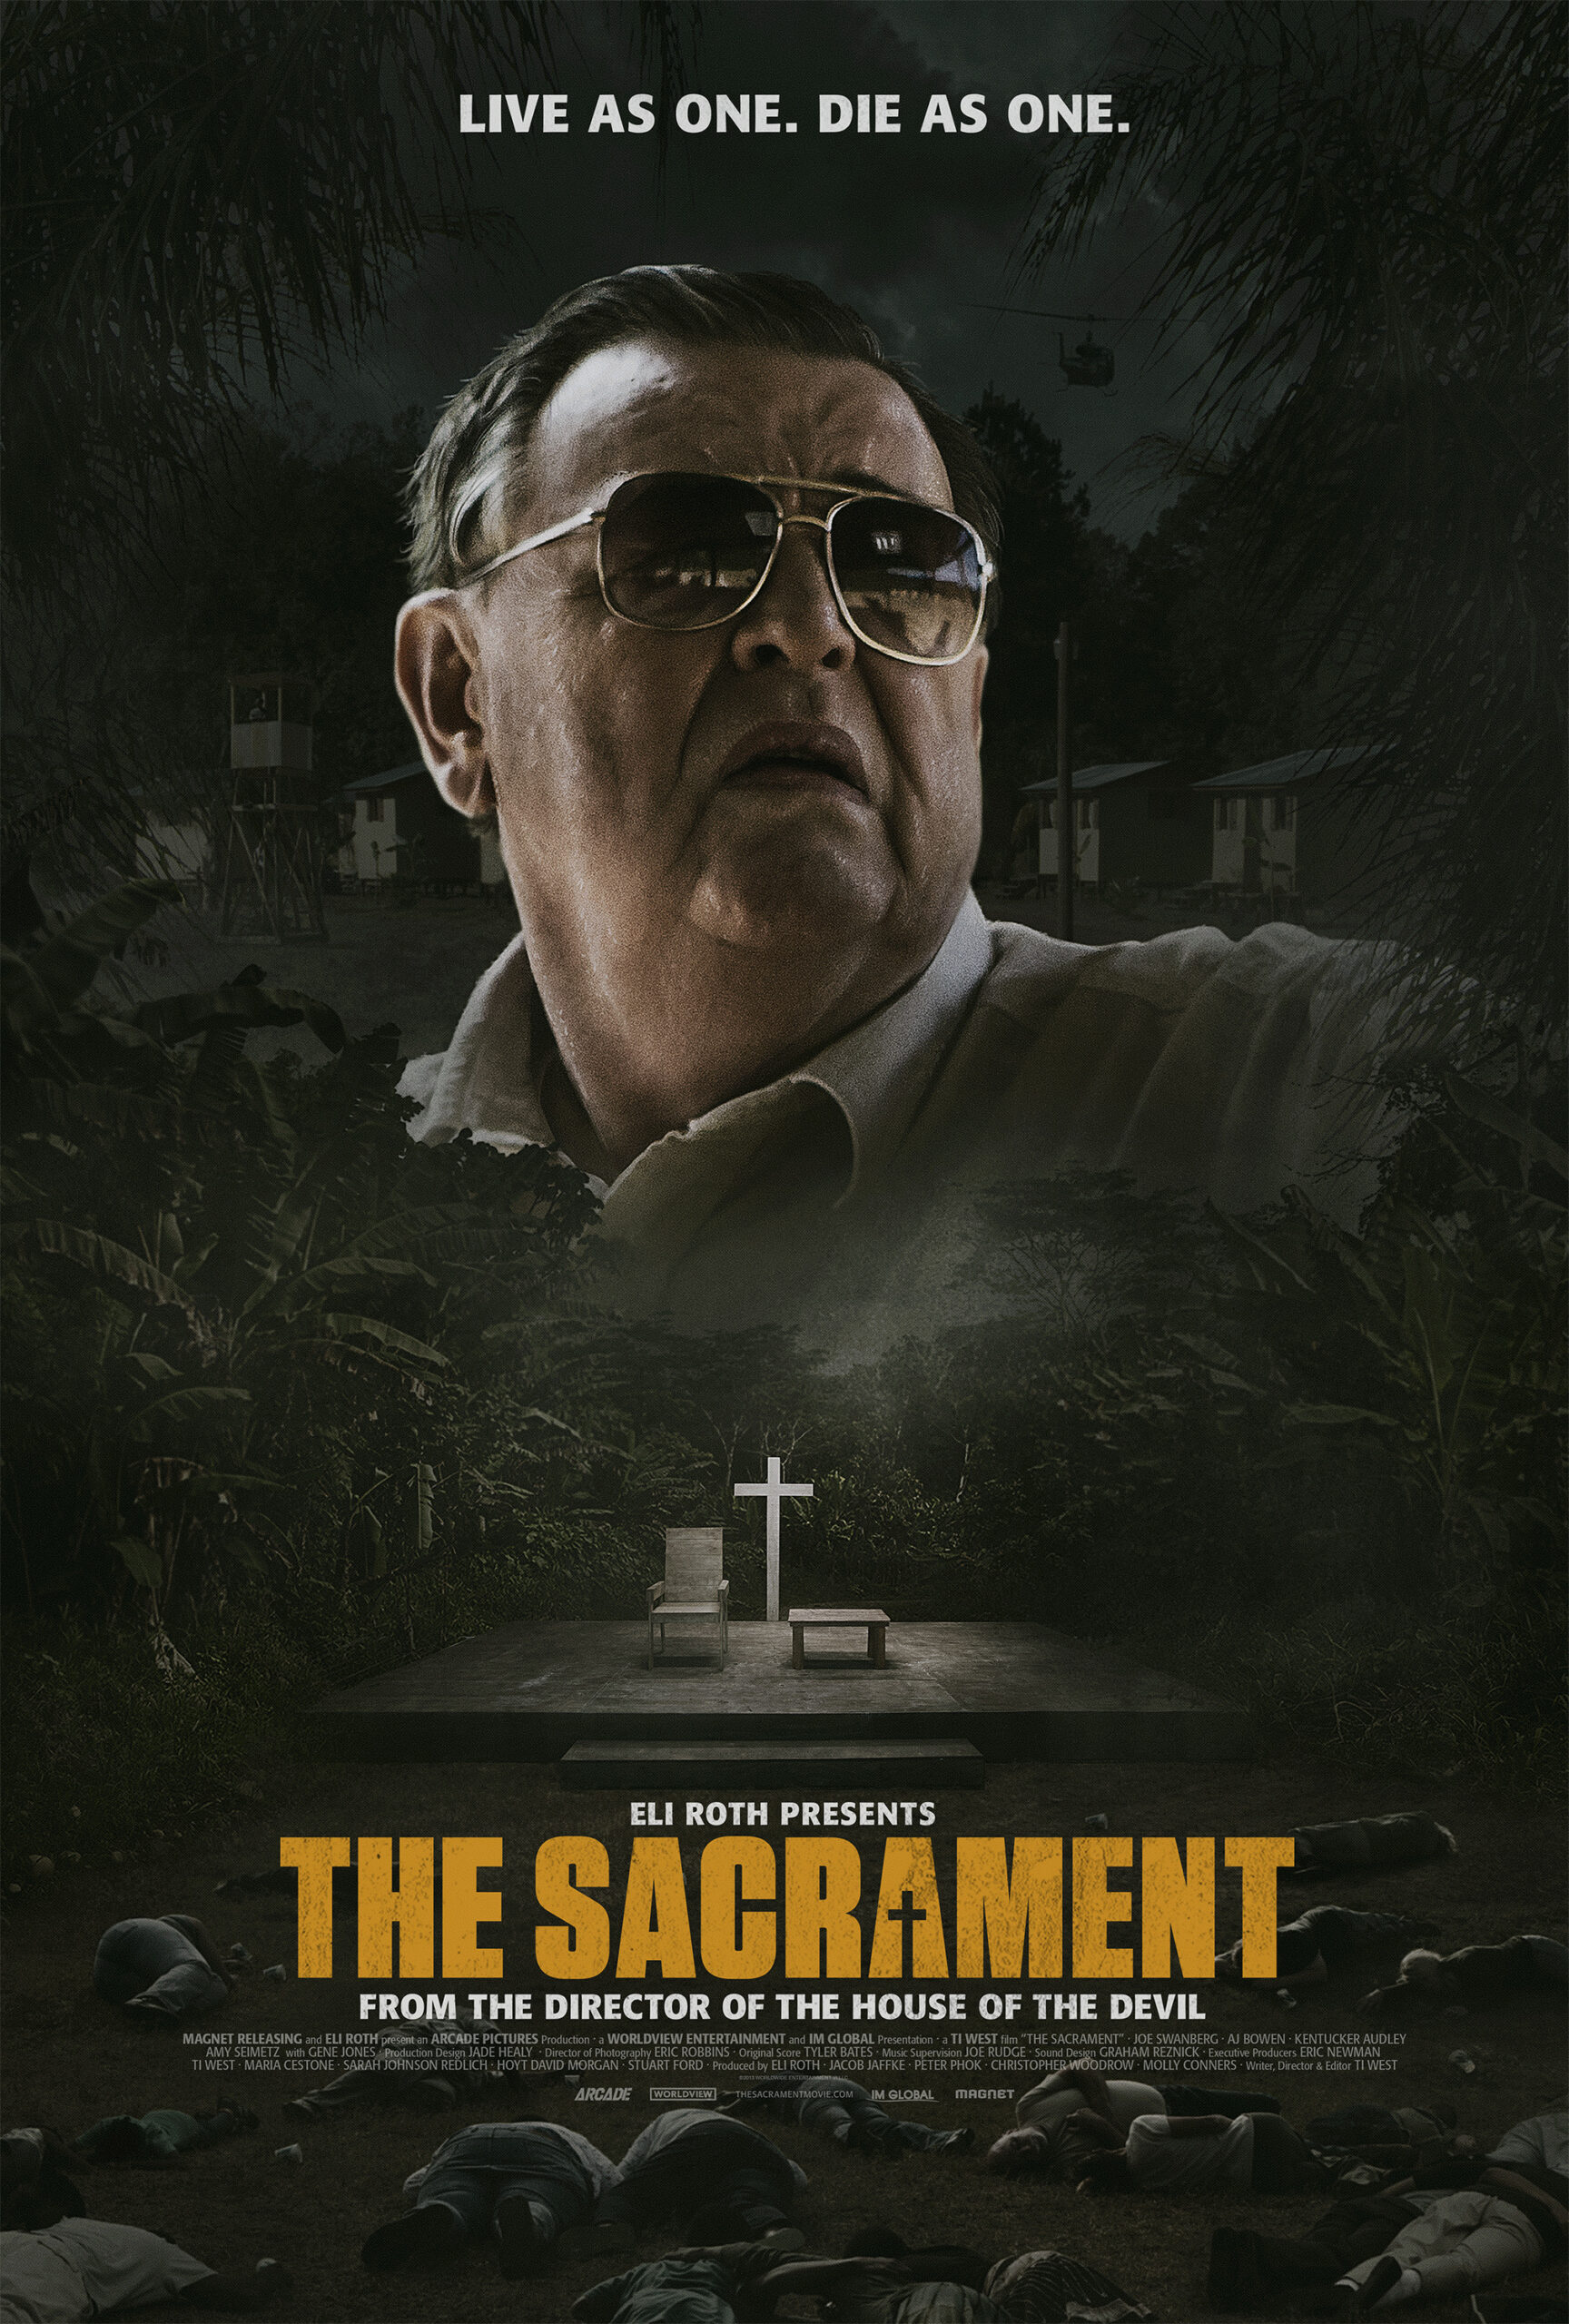 ดูหนังออนไลน์ฟรี The Sacrament (2013) สังหารโหด สังเวยหมู่